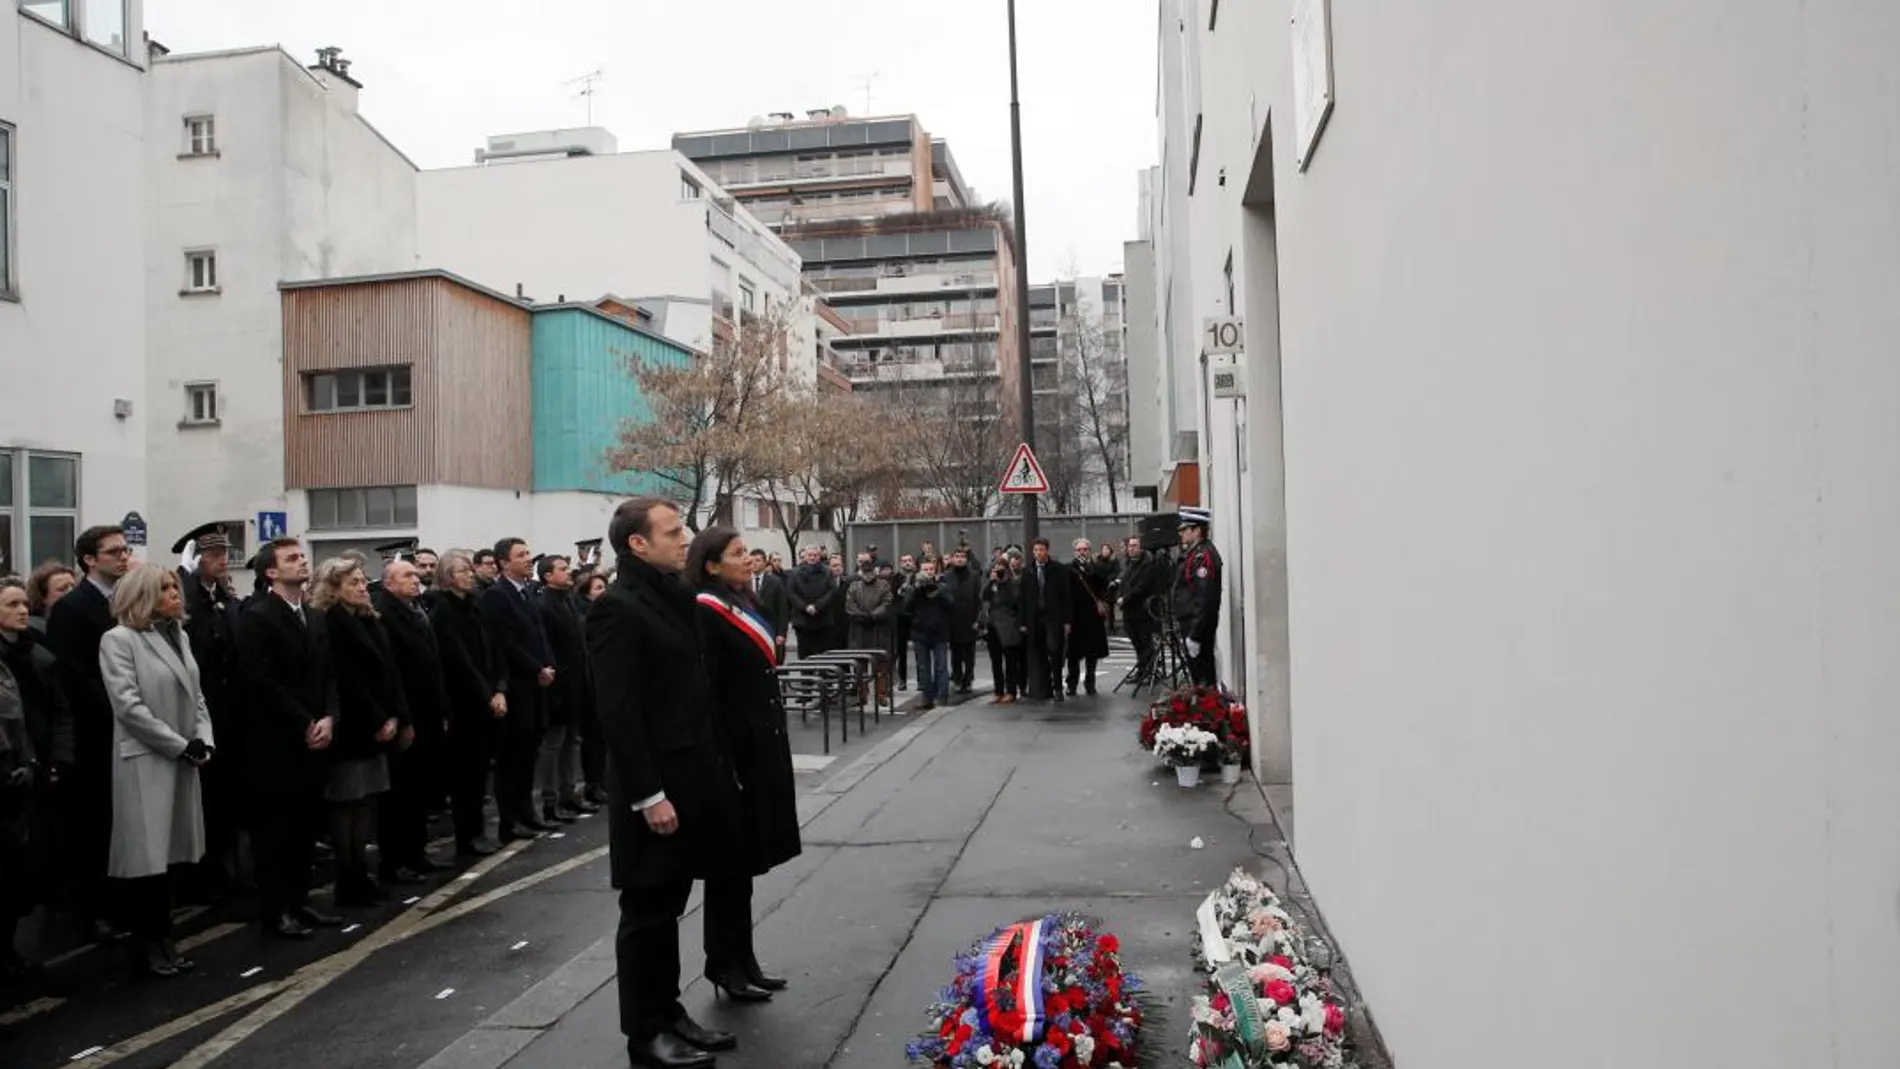 El presidente Emmanuel Macron, acompañado por la alcaldesa Anne Hidalgo, dirigió tres ceremonias sucesivas organizadas en recuerdo de las víctimas de «Charlie Hebdo» y el supermercado judío